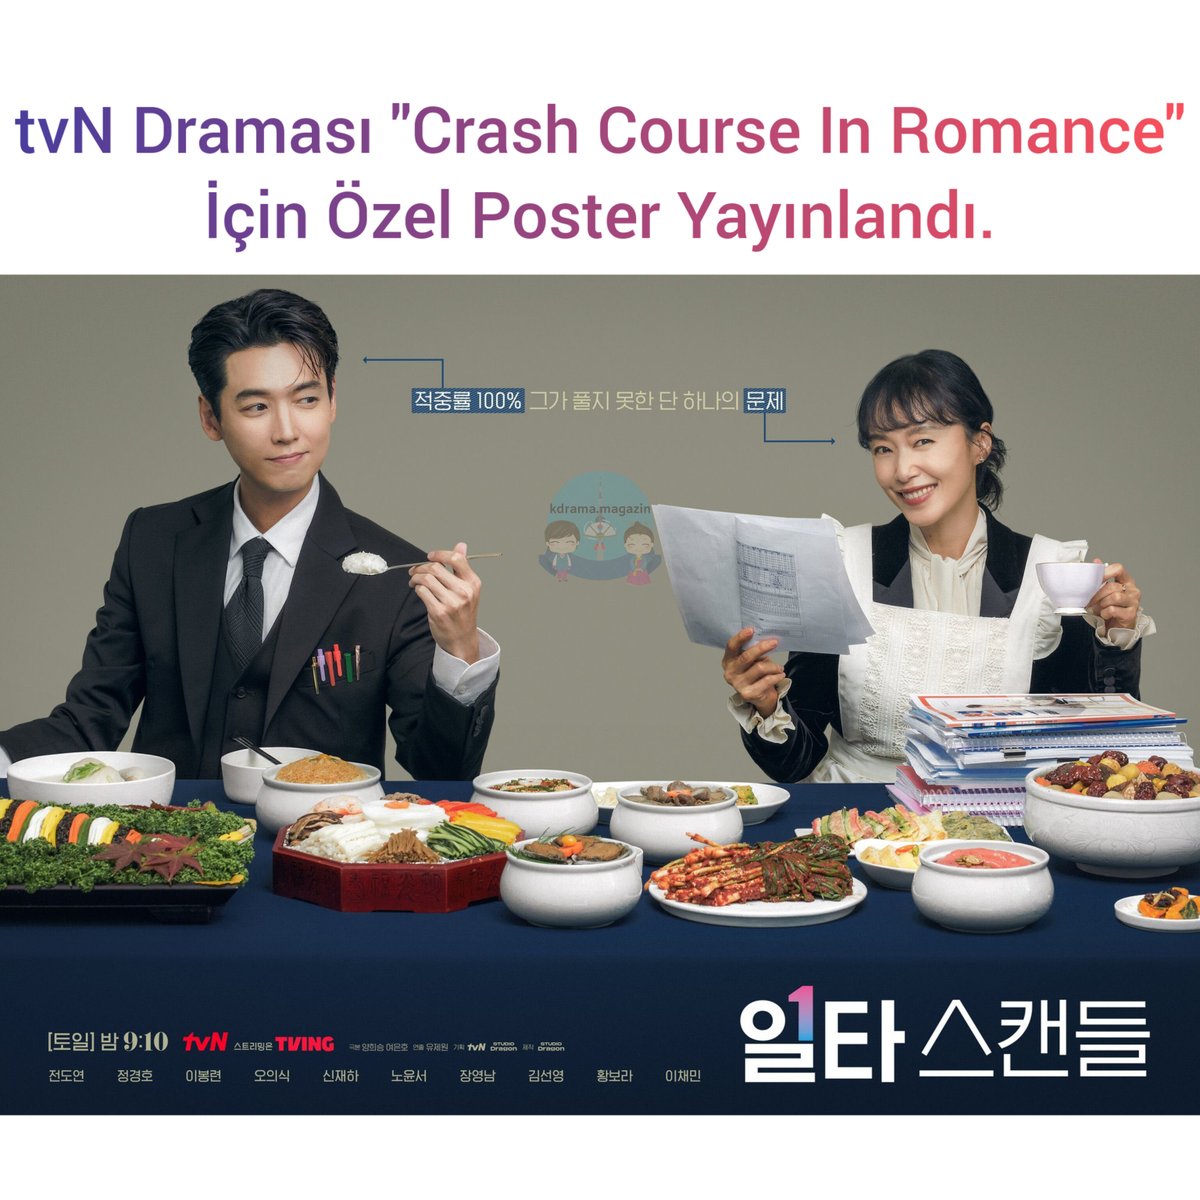 tvN Draması #CrashCourseInRomance İçin Özel Poster Yayınlandı.

🍿Kore'nin en iyi eğitmeni ve ebeveynleri arasında yaşananları anlatan romantik bir komedi türü.

🗓14 Ocak'ta yayınlanmaya başladı.

#JeonDoYeon #JungKyungHo #ShinJaeHa #RohYoonSeo #OneShotScandal #IltaScandal